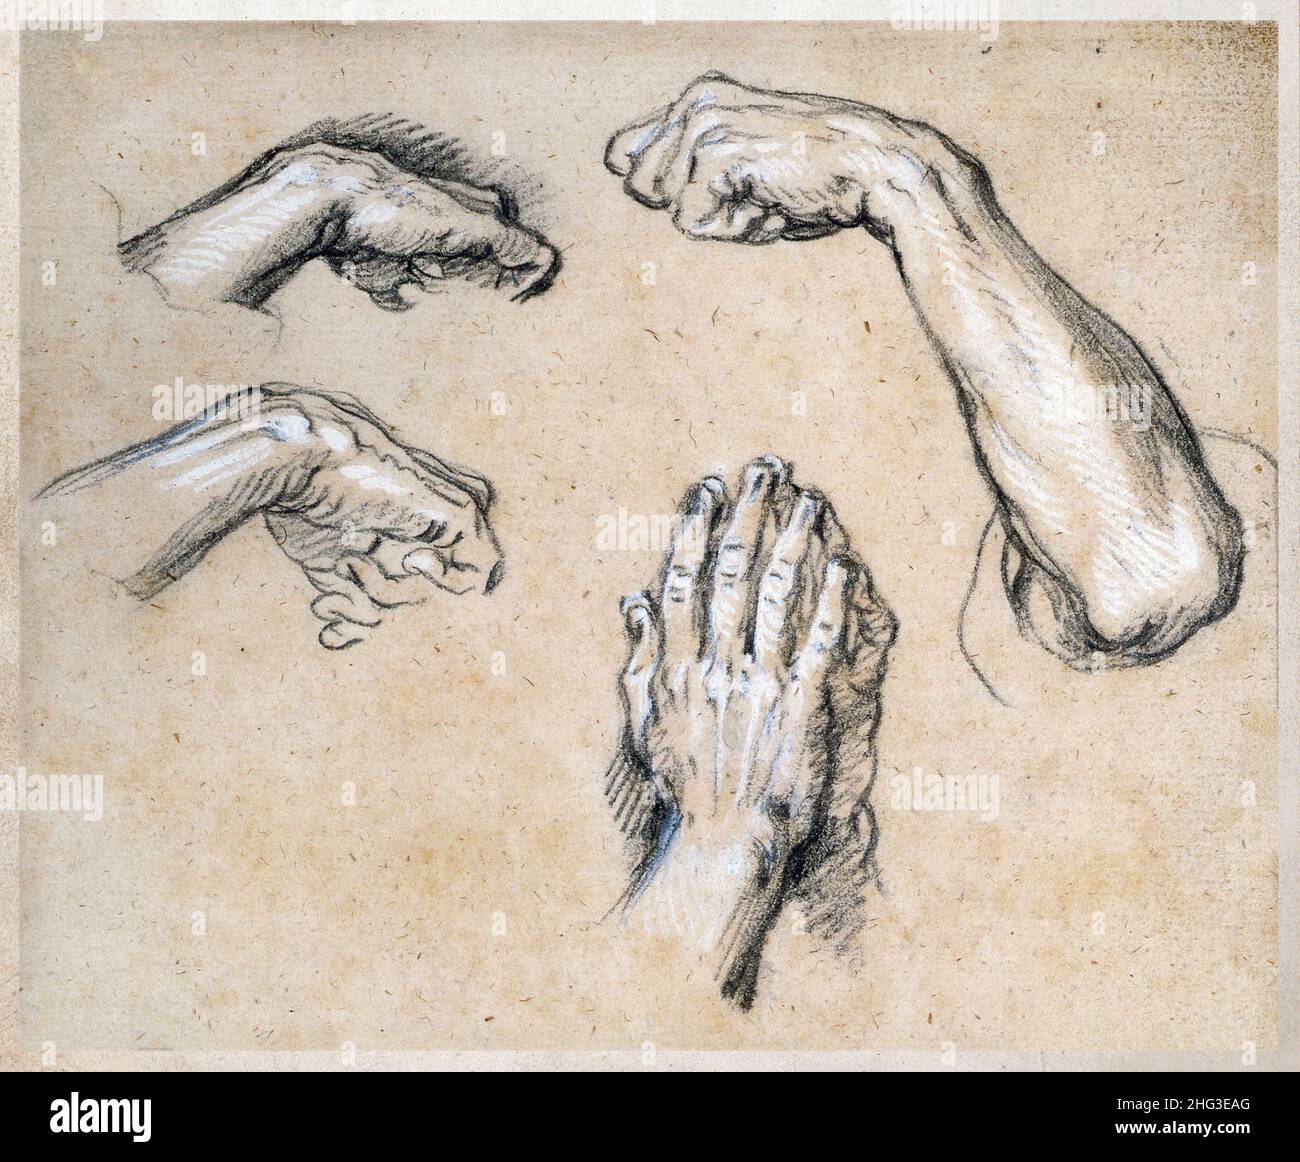 L'impression de la manière de 18th crayon centurey de quatre études de mains.Charles et Joseph François Parrocel.'L'étude des mains des hommes en quatre poses'.Paris, FRA Banque D'Images